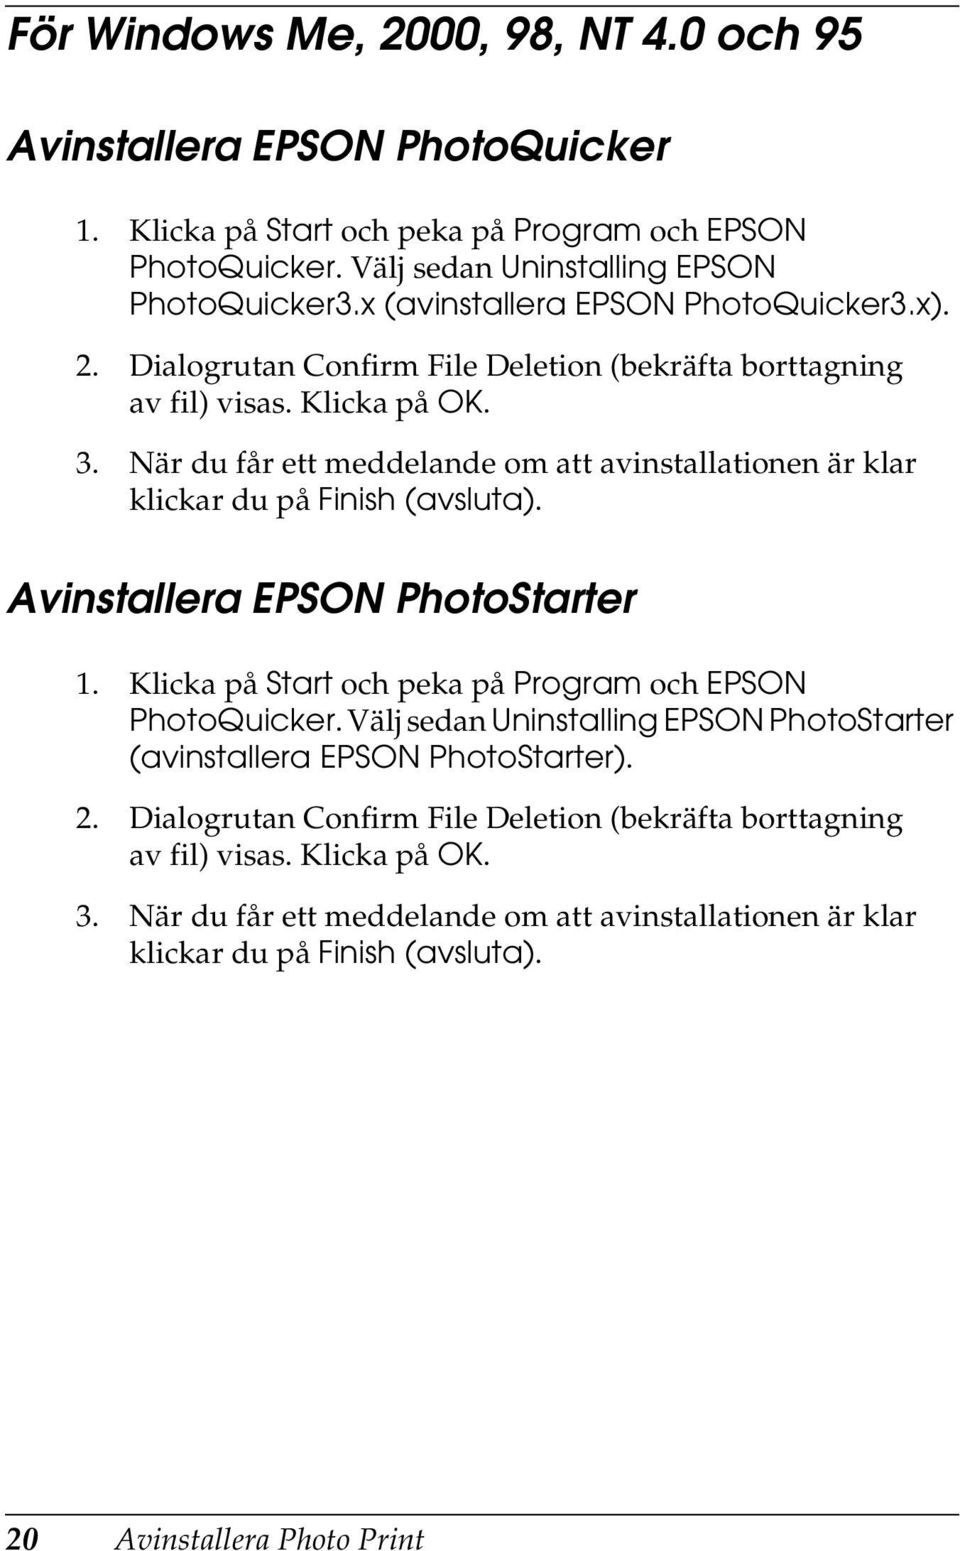 När du får ett meddelande om att avinstallationen är klar klickar du på Finish (avsluta). Avinstallera EPSON PhotoStarter 1. Klicka på Start och peka på Program och EPSON PhotoQuicker.